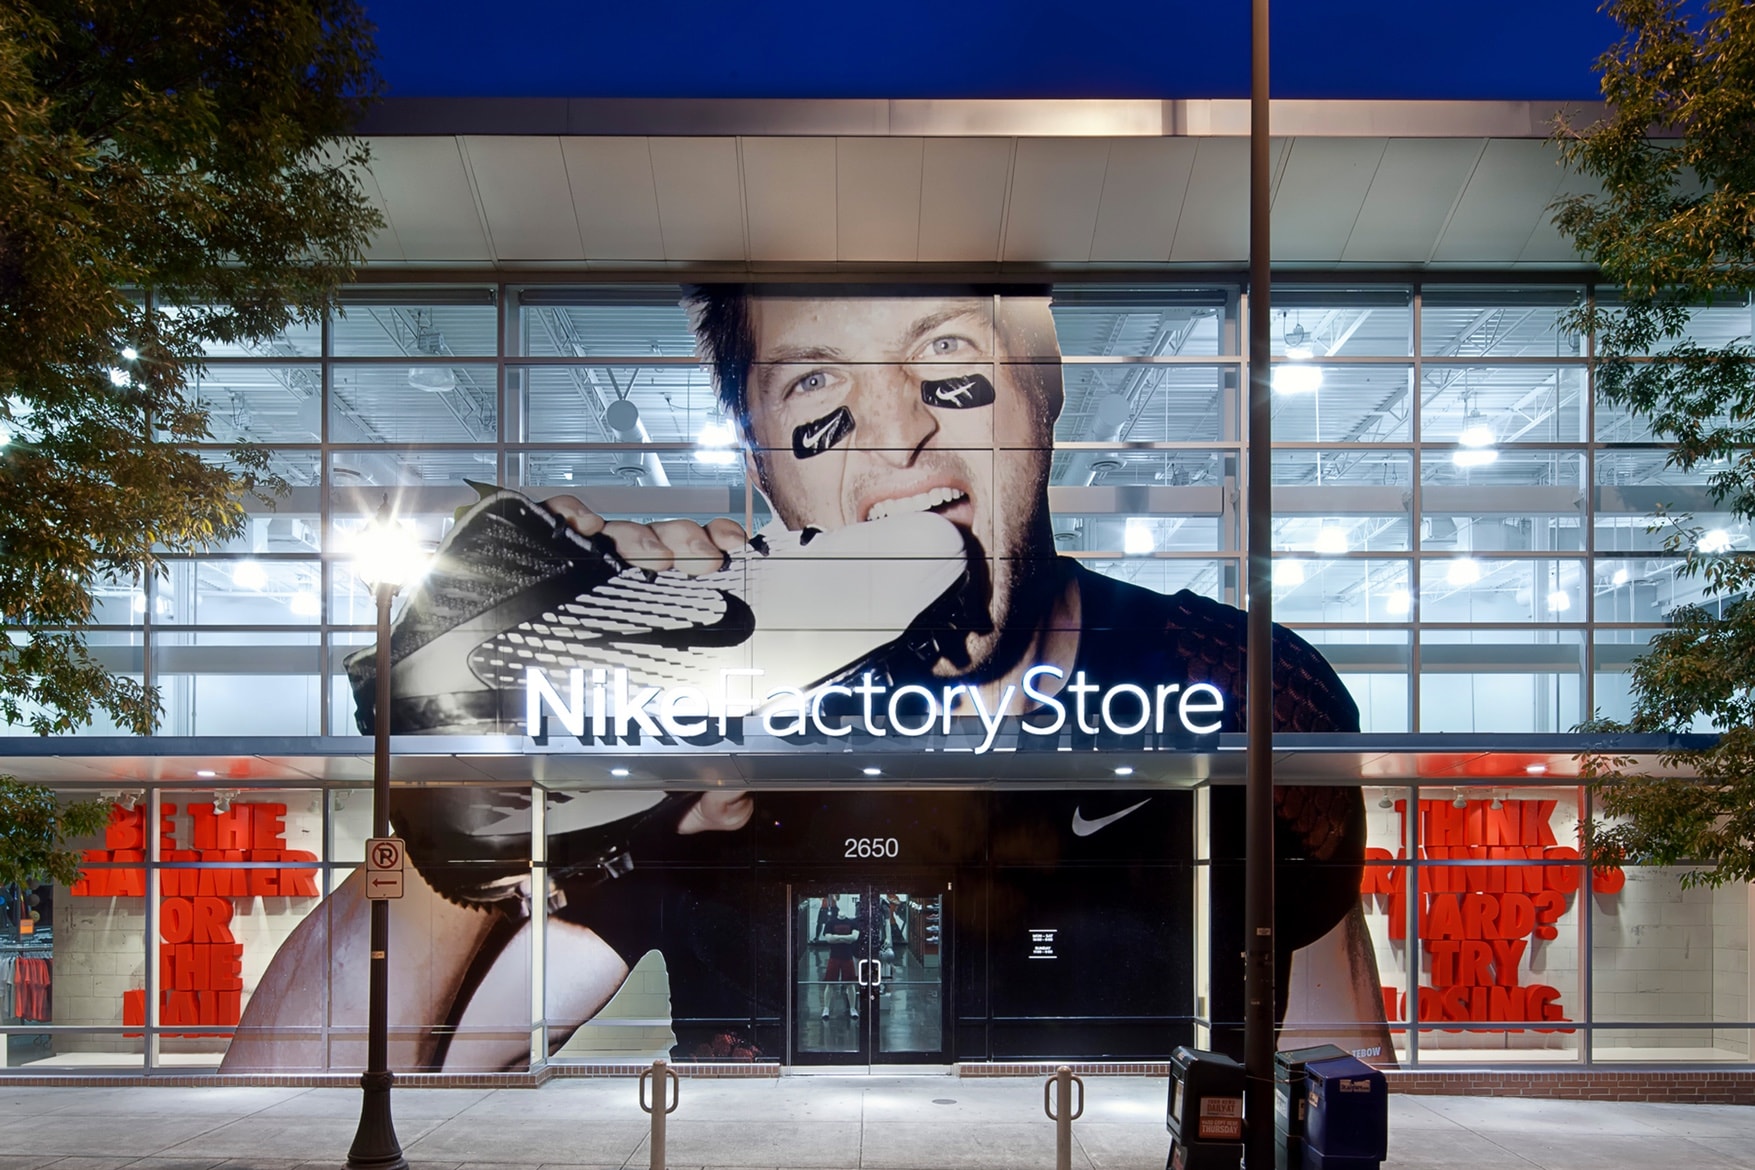 單刀赴會－美國一男子在 Nike Factory Store 偷去 800 多對鞋